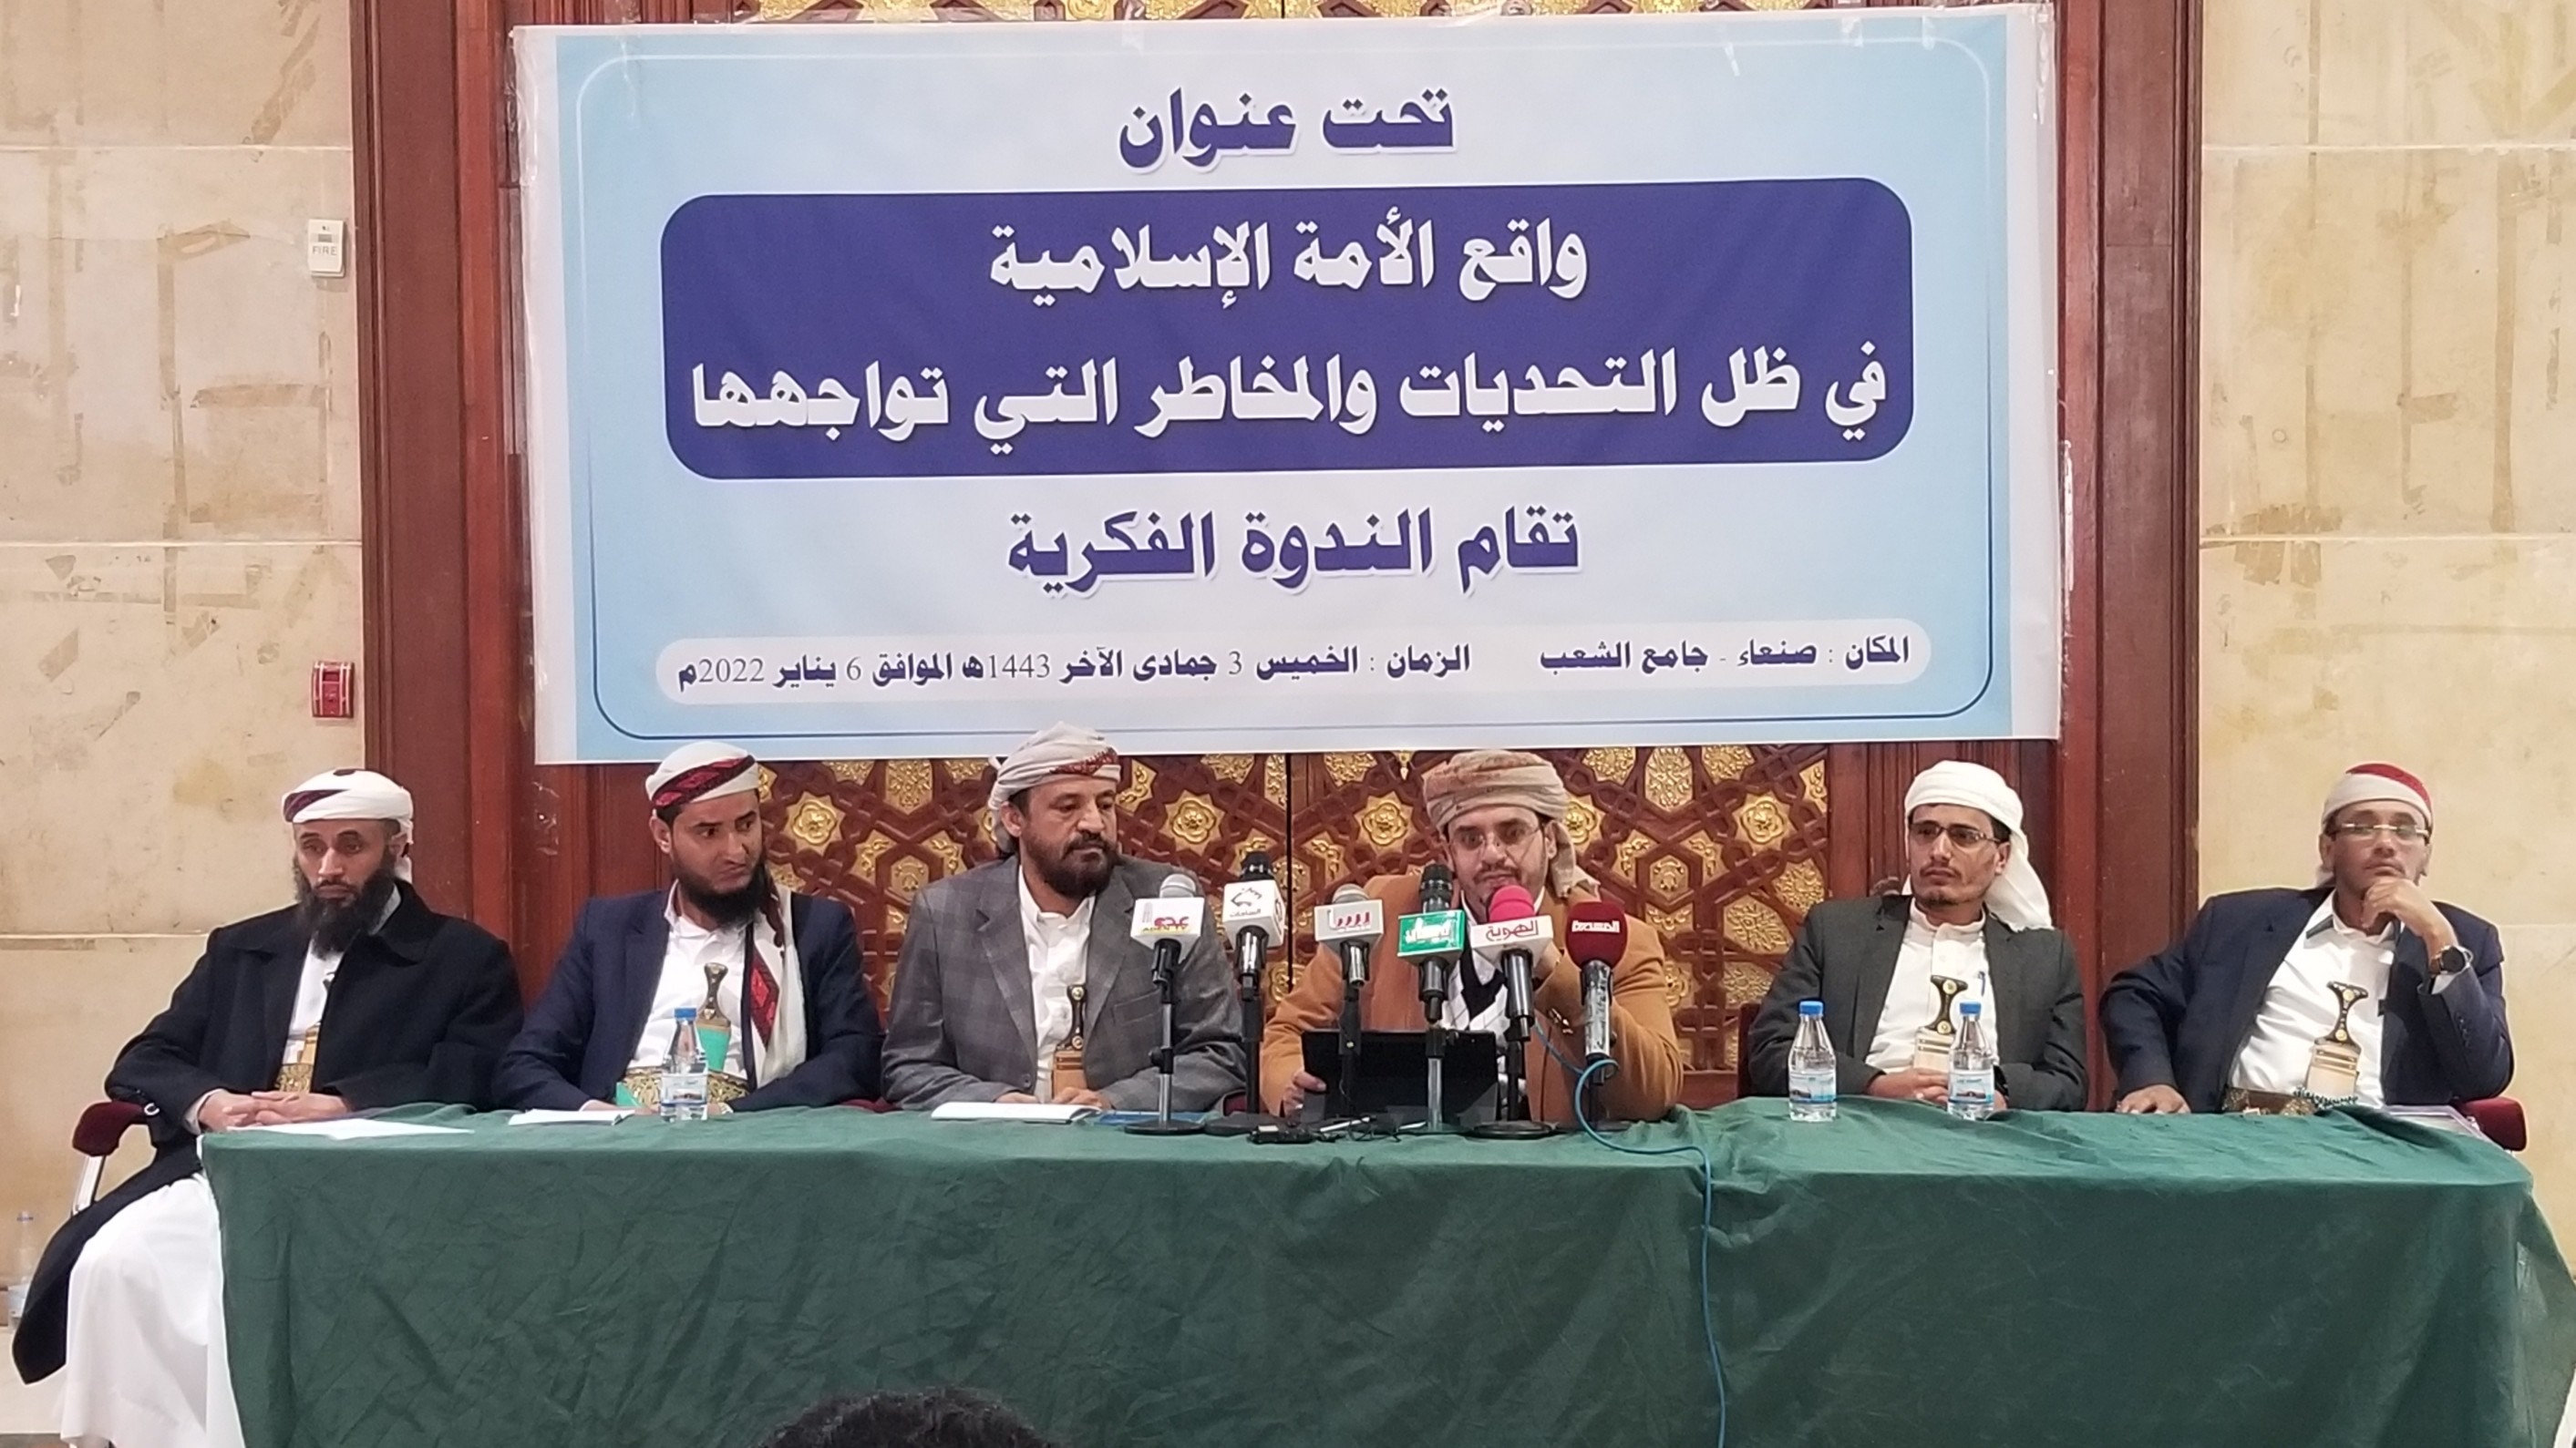 ندوة في صنعاء بعنوان "واقع الأمة الإسلامية في ظل التحديات والمخاطر